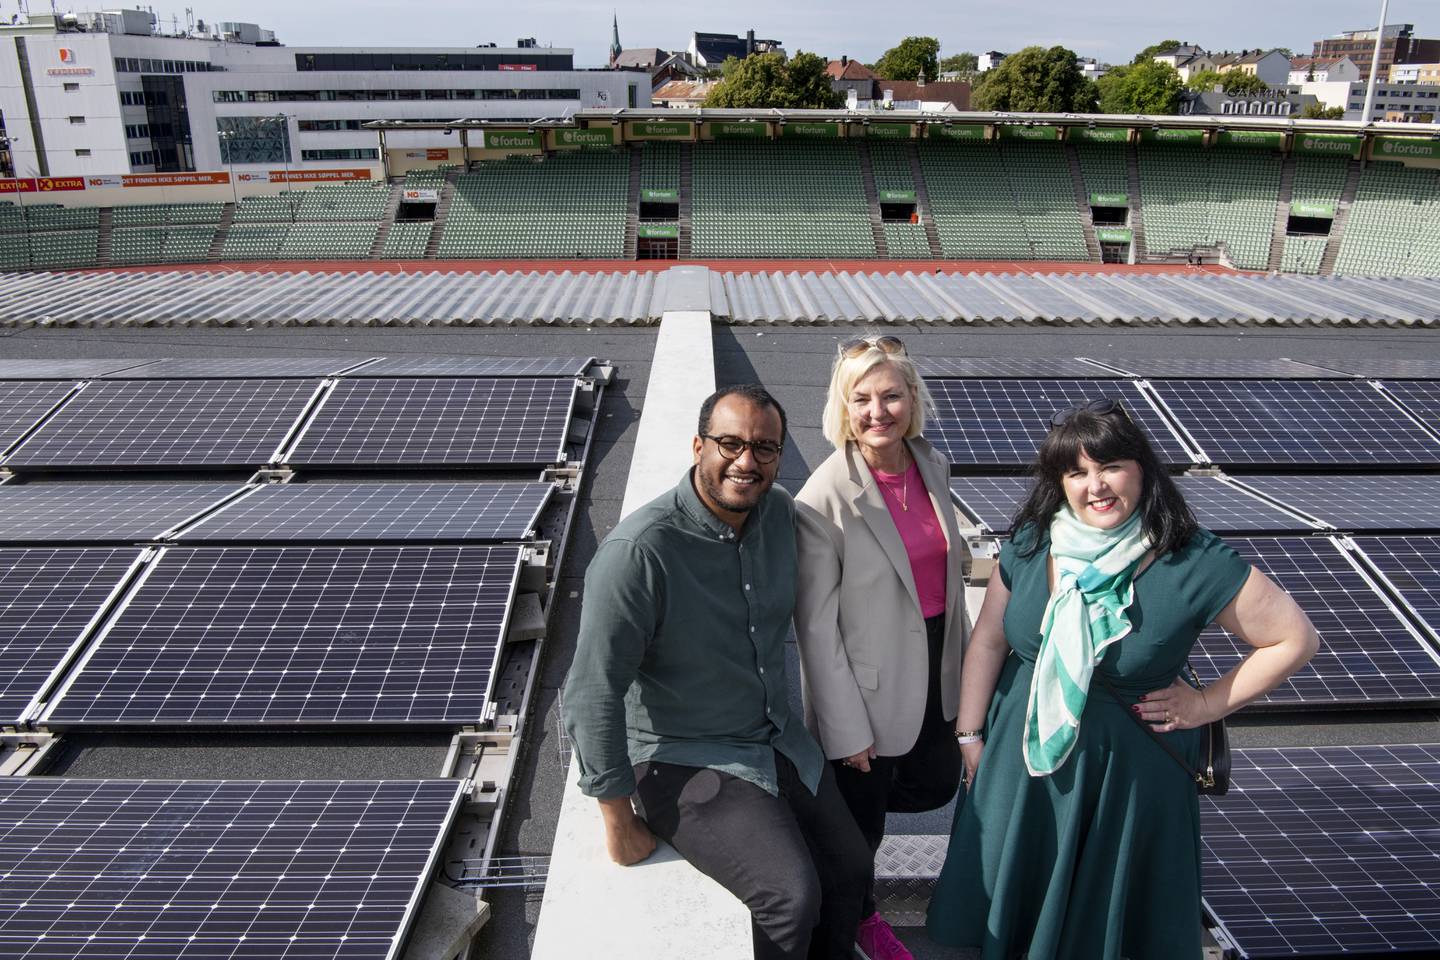 Omar Samy Gamal, Victoria Evensen og Eli Grimsby på taket av Bislett stadion. Idrettsanlegg med solceller på taket.